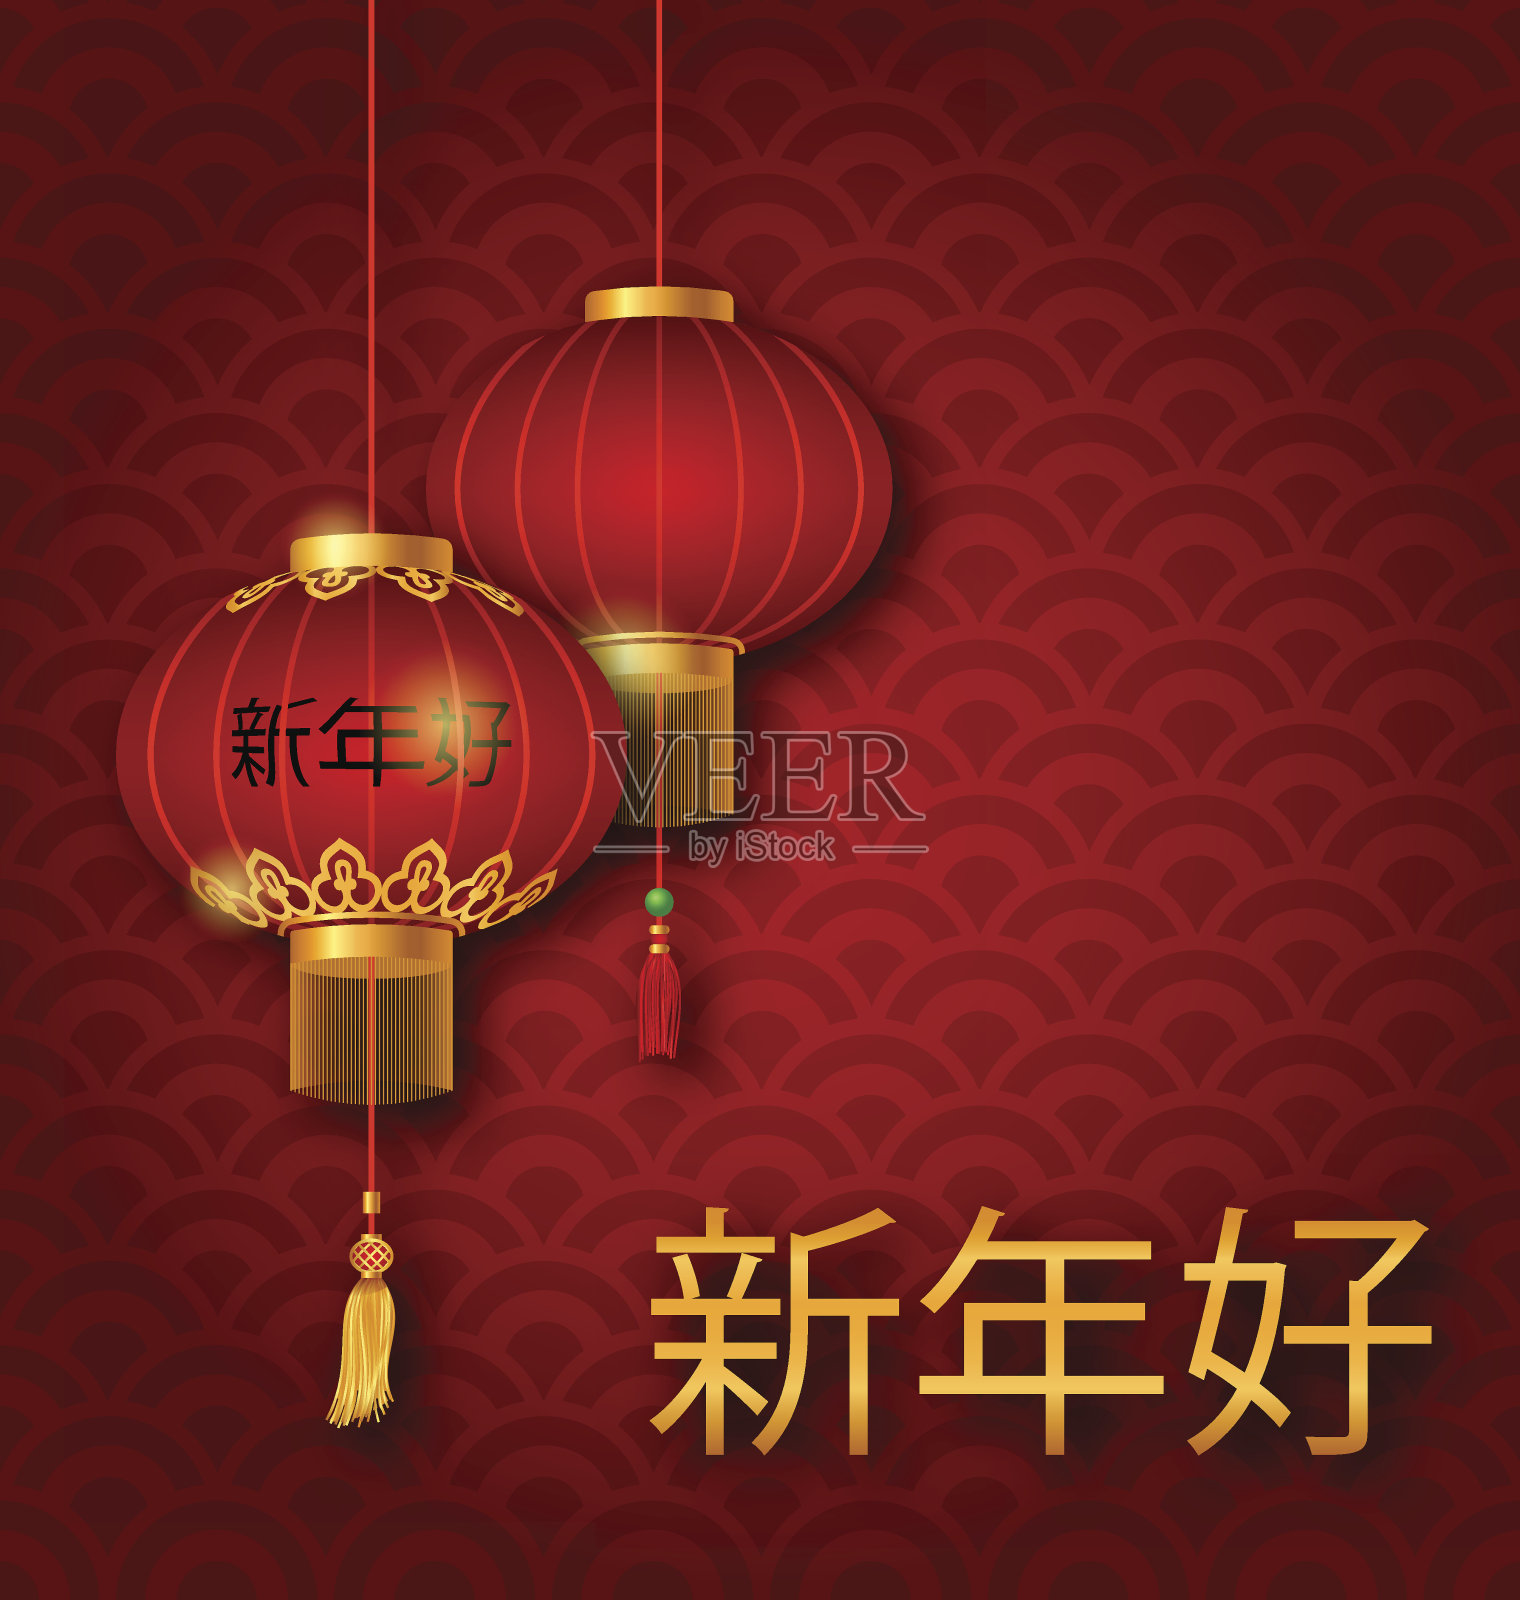 2017年中国新年经典明信片红灯笼插画图片素材